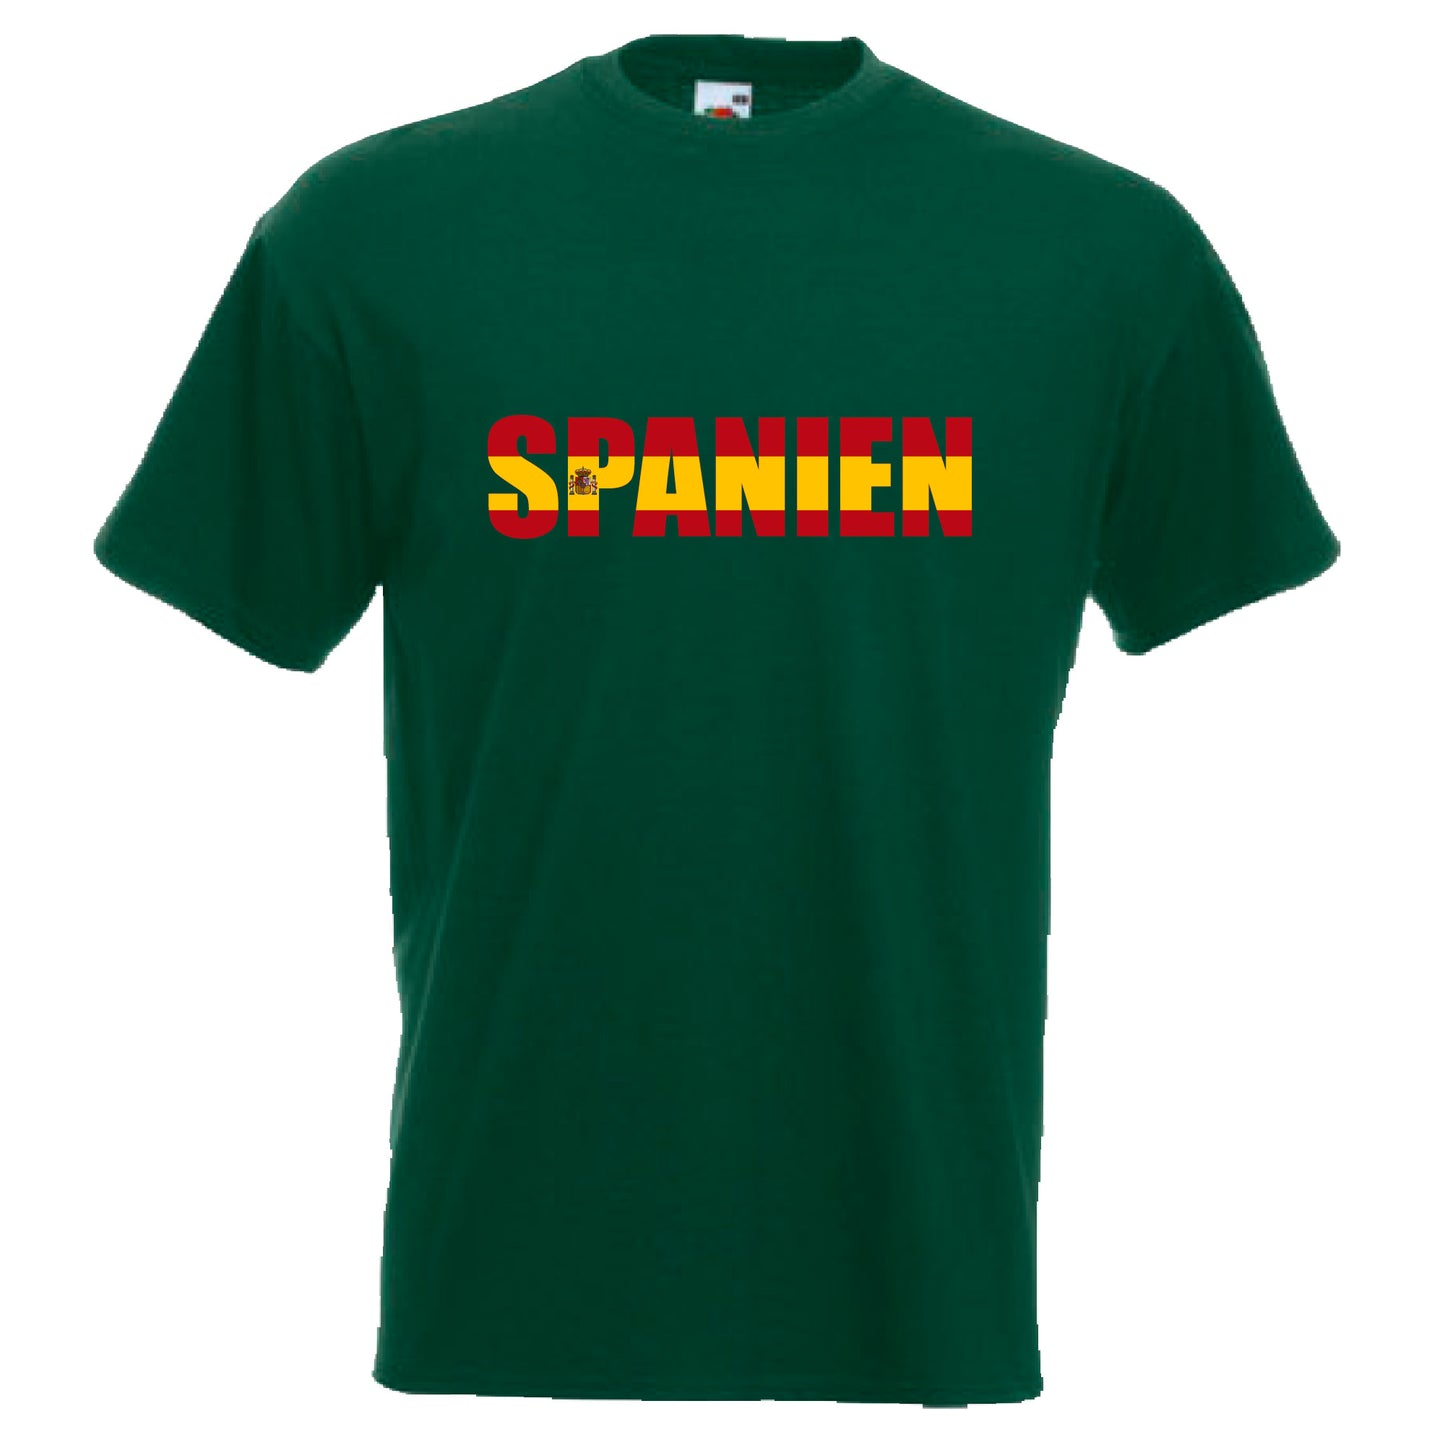 INDIGOS UG - T-Shirt Herren - Spanien - Schriftzug - Fussball